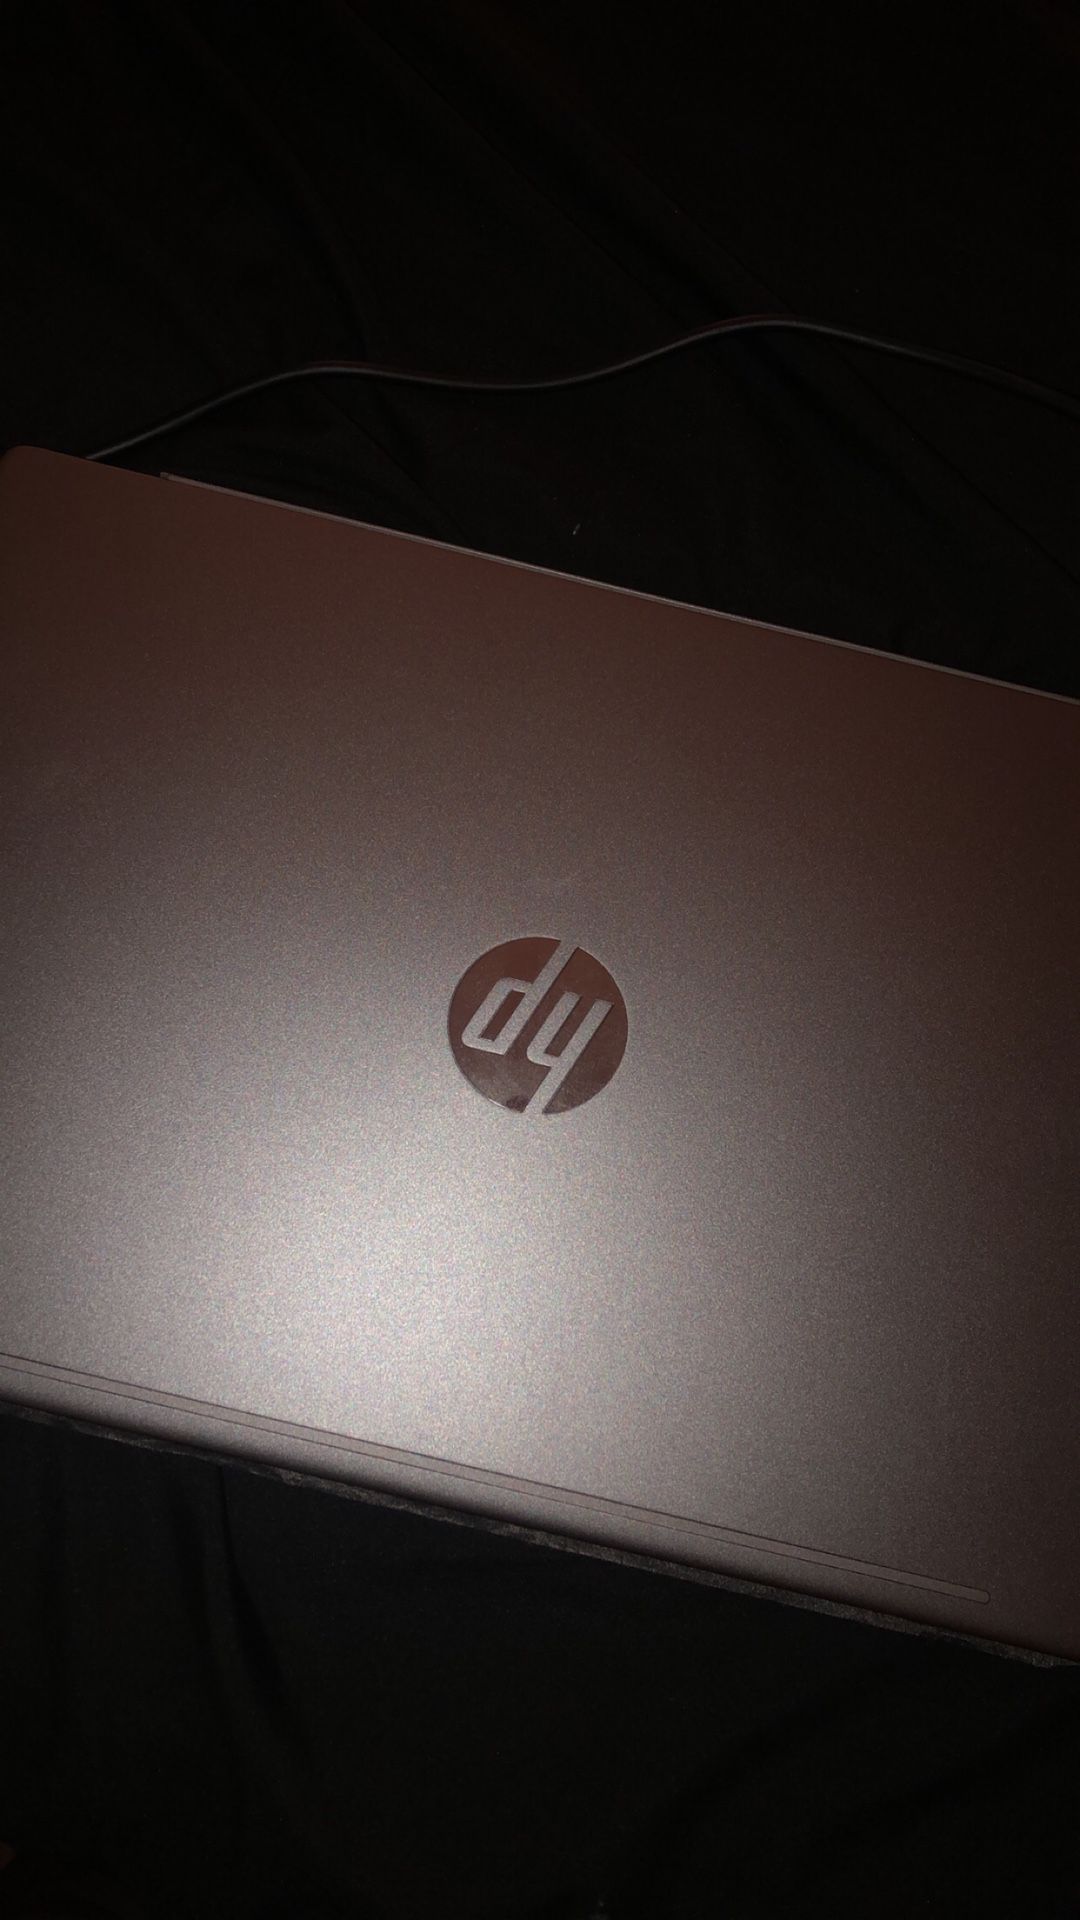 New HP Pavilion Laptop